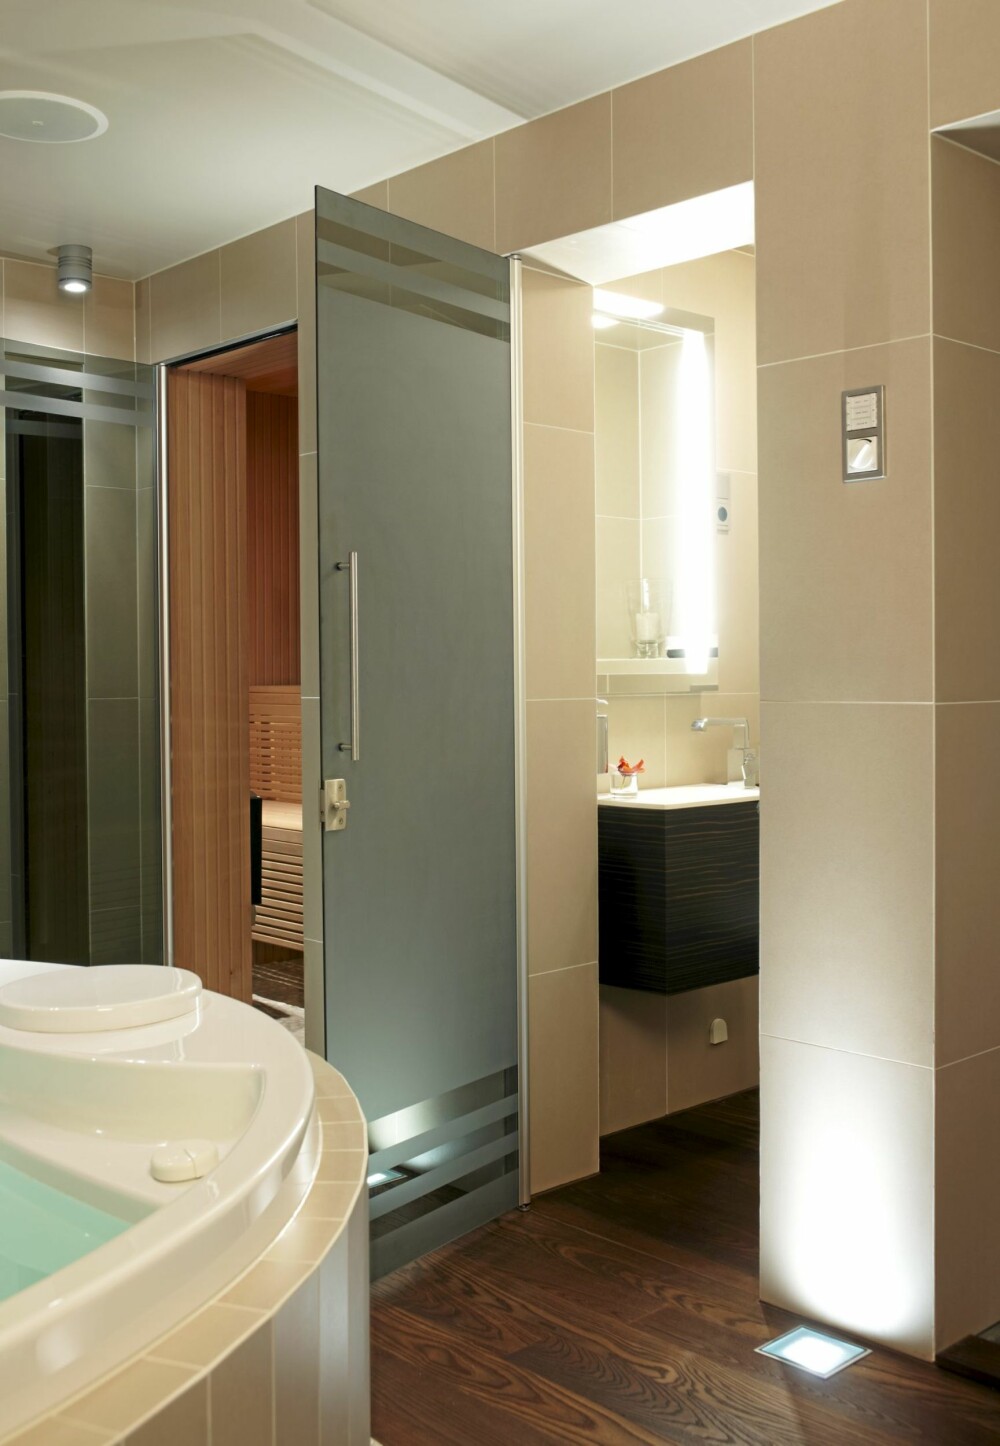 FROSTET: Glassdørene inn til toalett og badstu er frostet og hindrer innsyn.